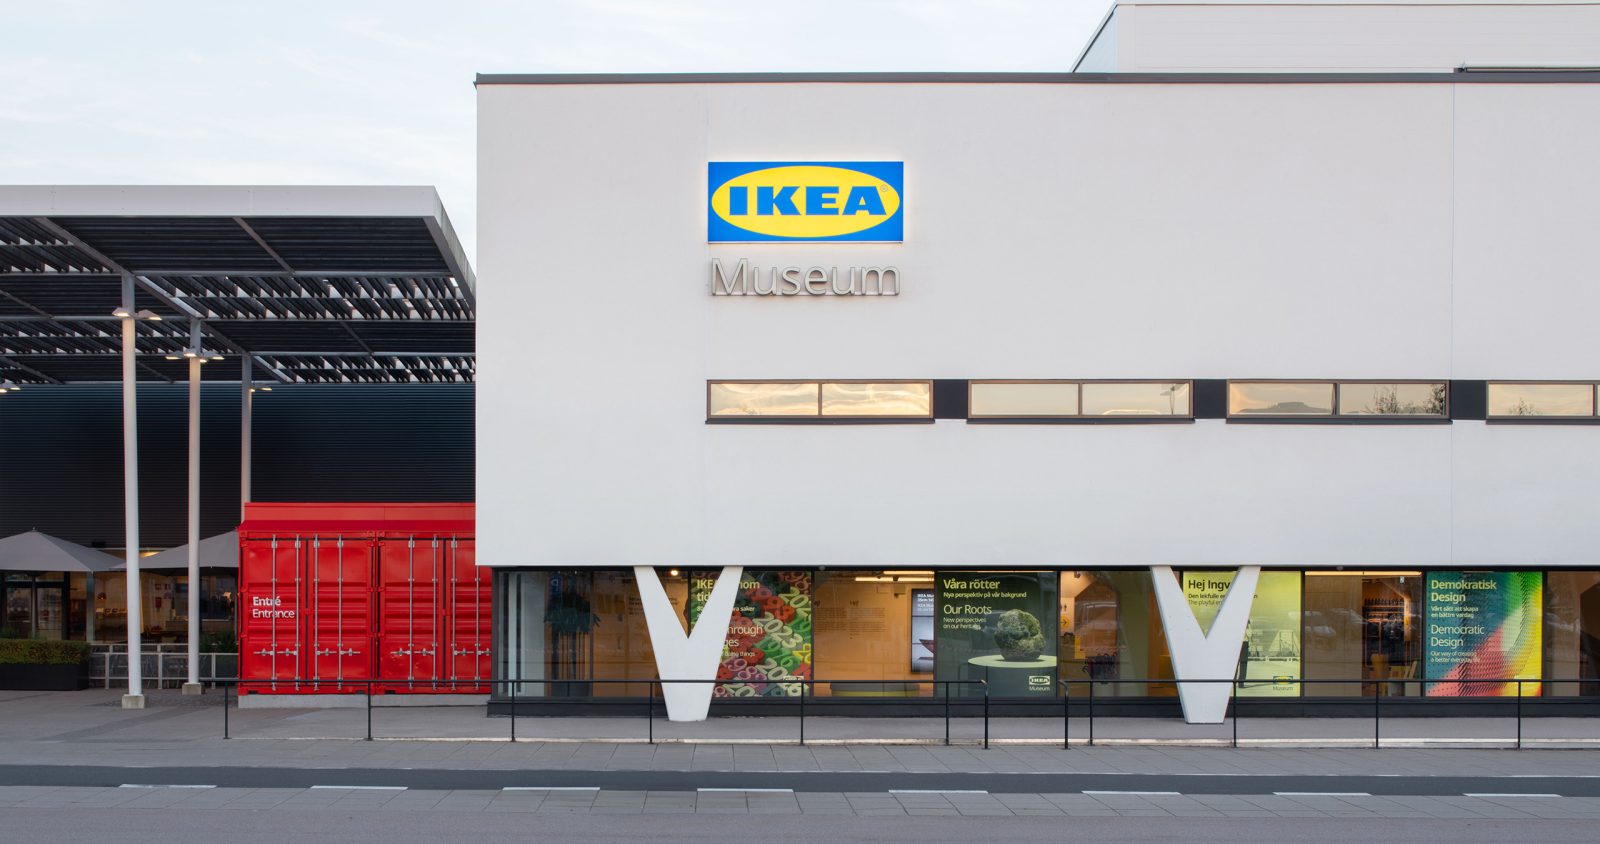 Wit gebouw met strakke lijnen en v-vormige pilaren, op het bord op de gevel staat IKEA Museum.